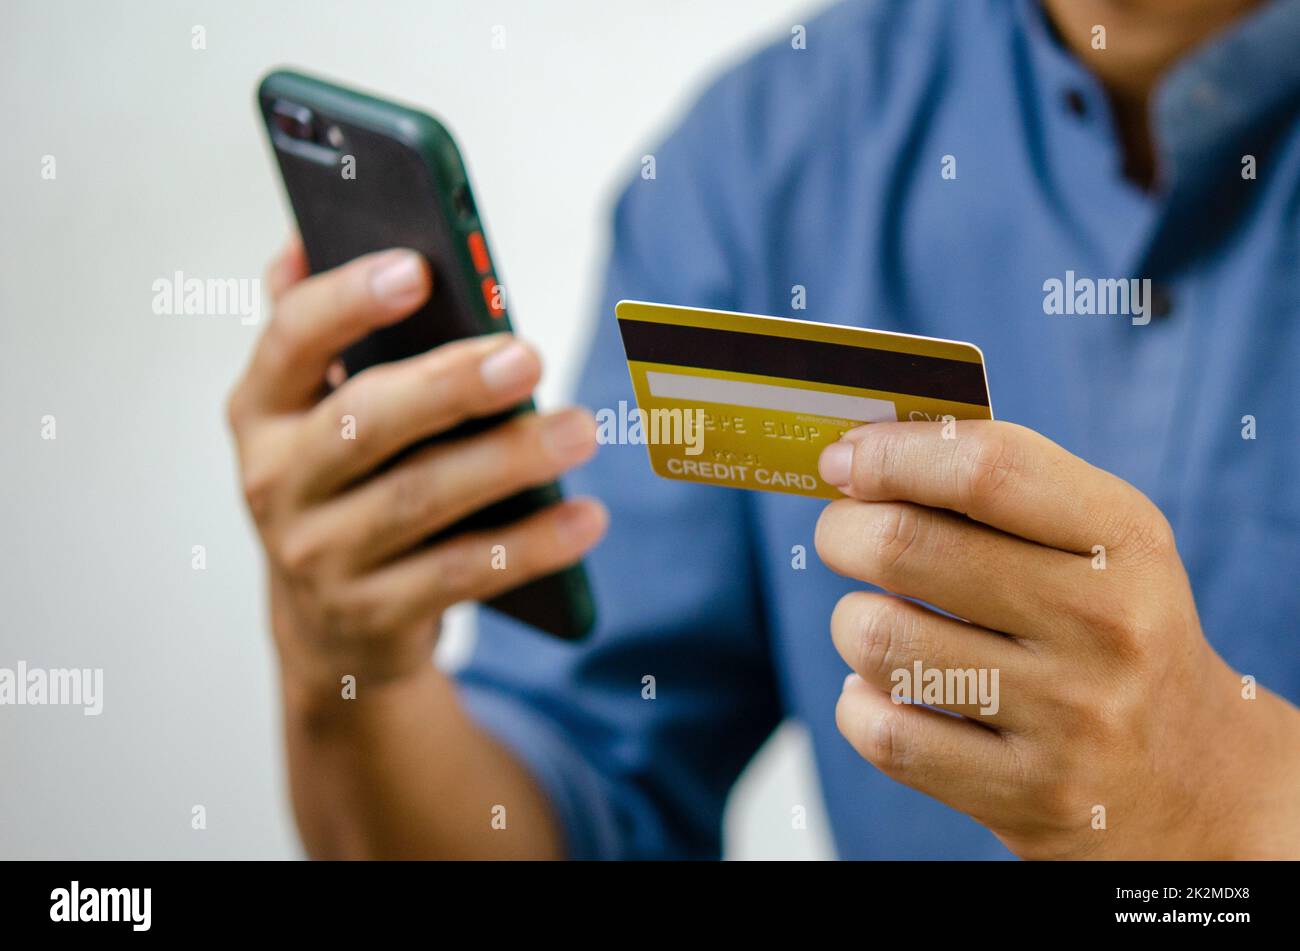 uomo mano che tiene carta di credito e telefono cellulare online shopping e-commerce e internet banking. Foto Stock